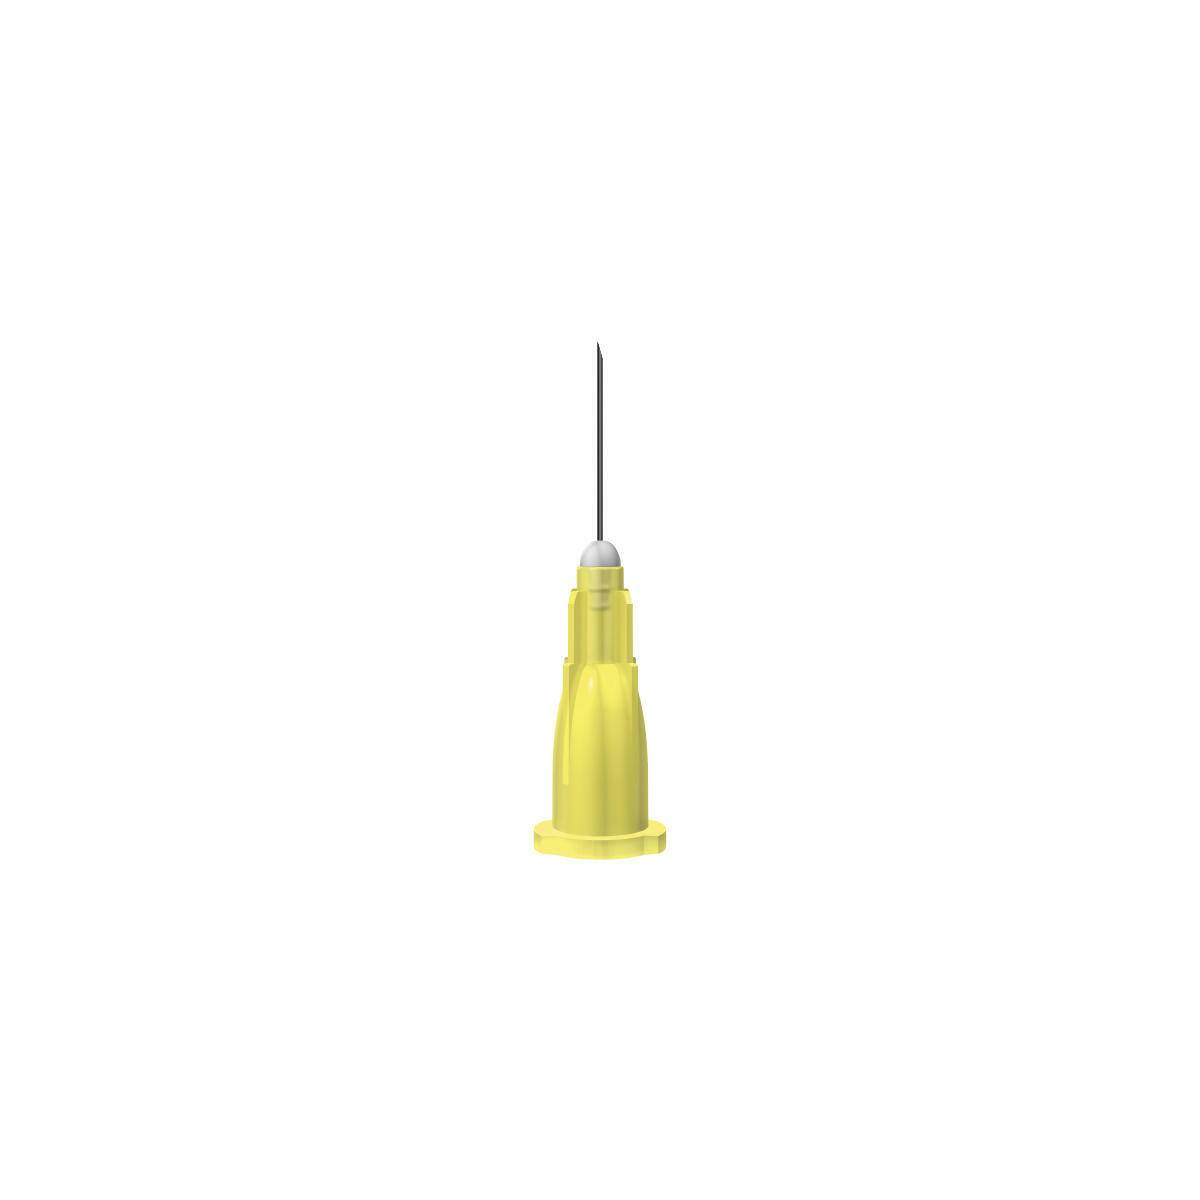 30g Yellow 12mm Meso-relle Extra ThinWall Needle - UKMEDI